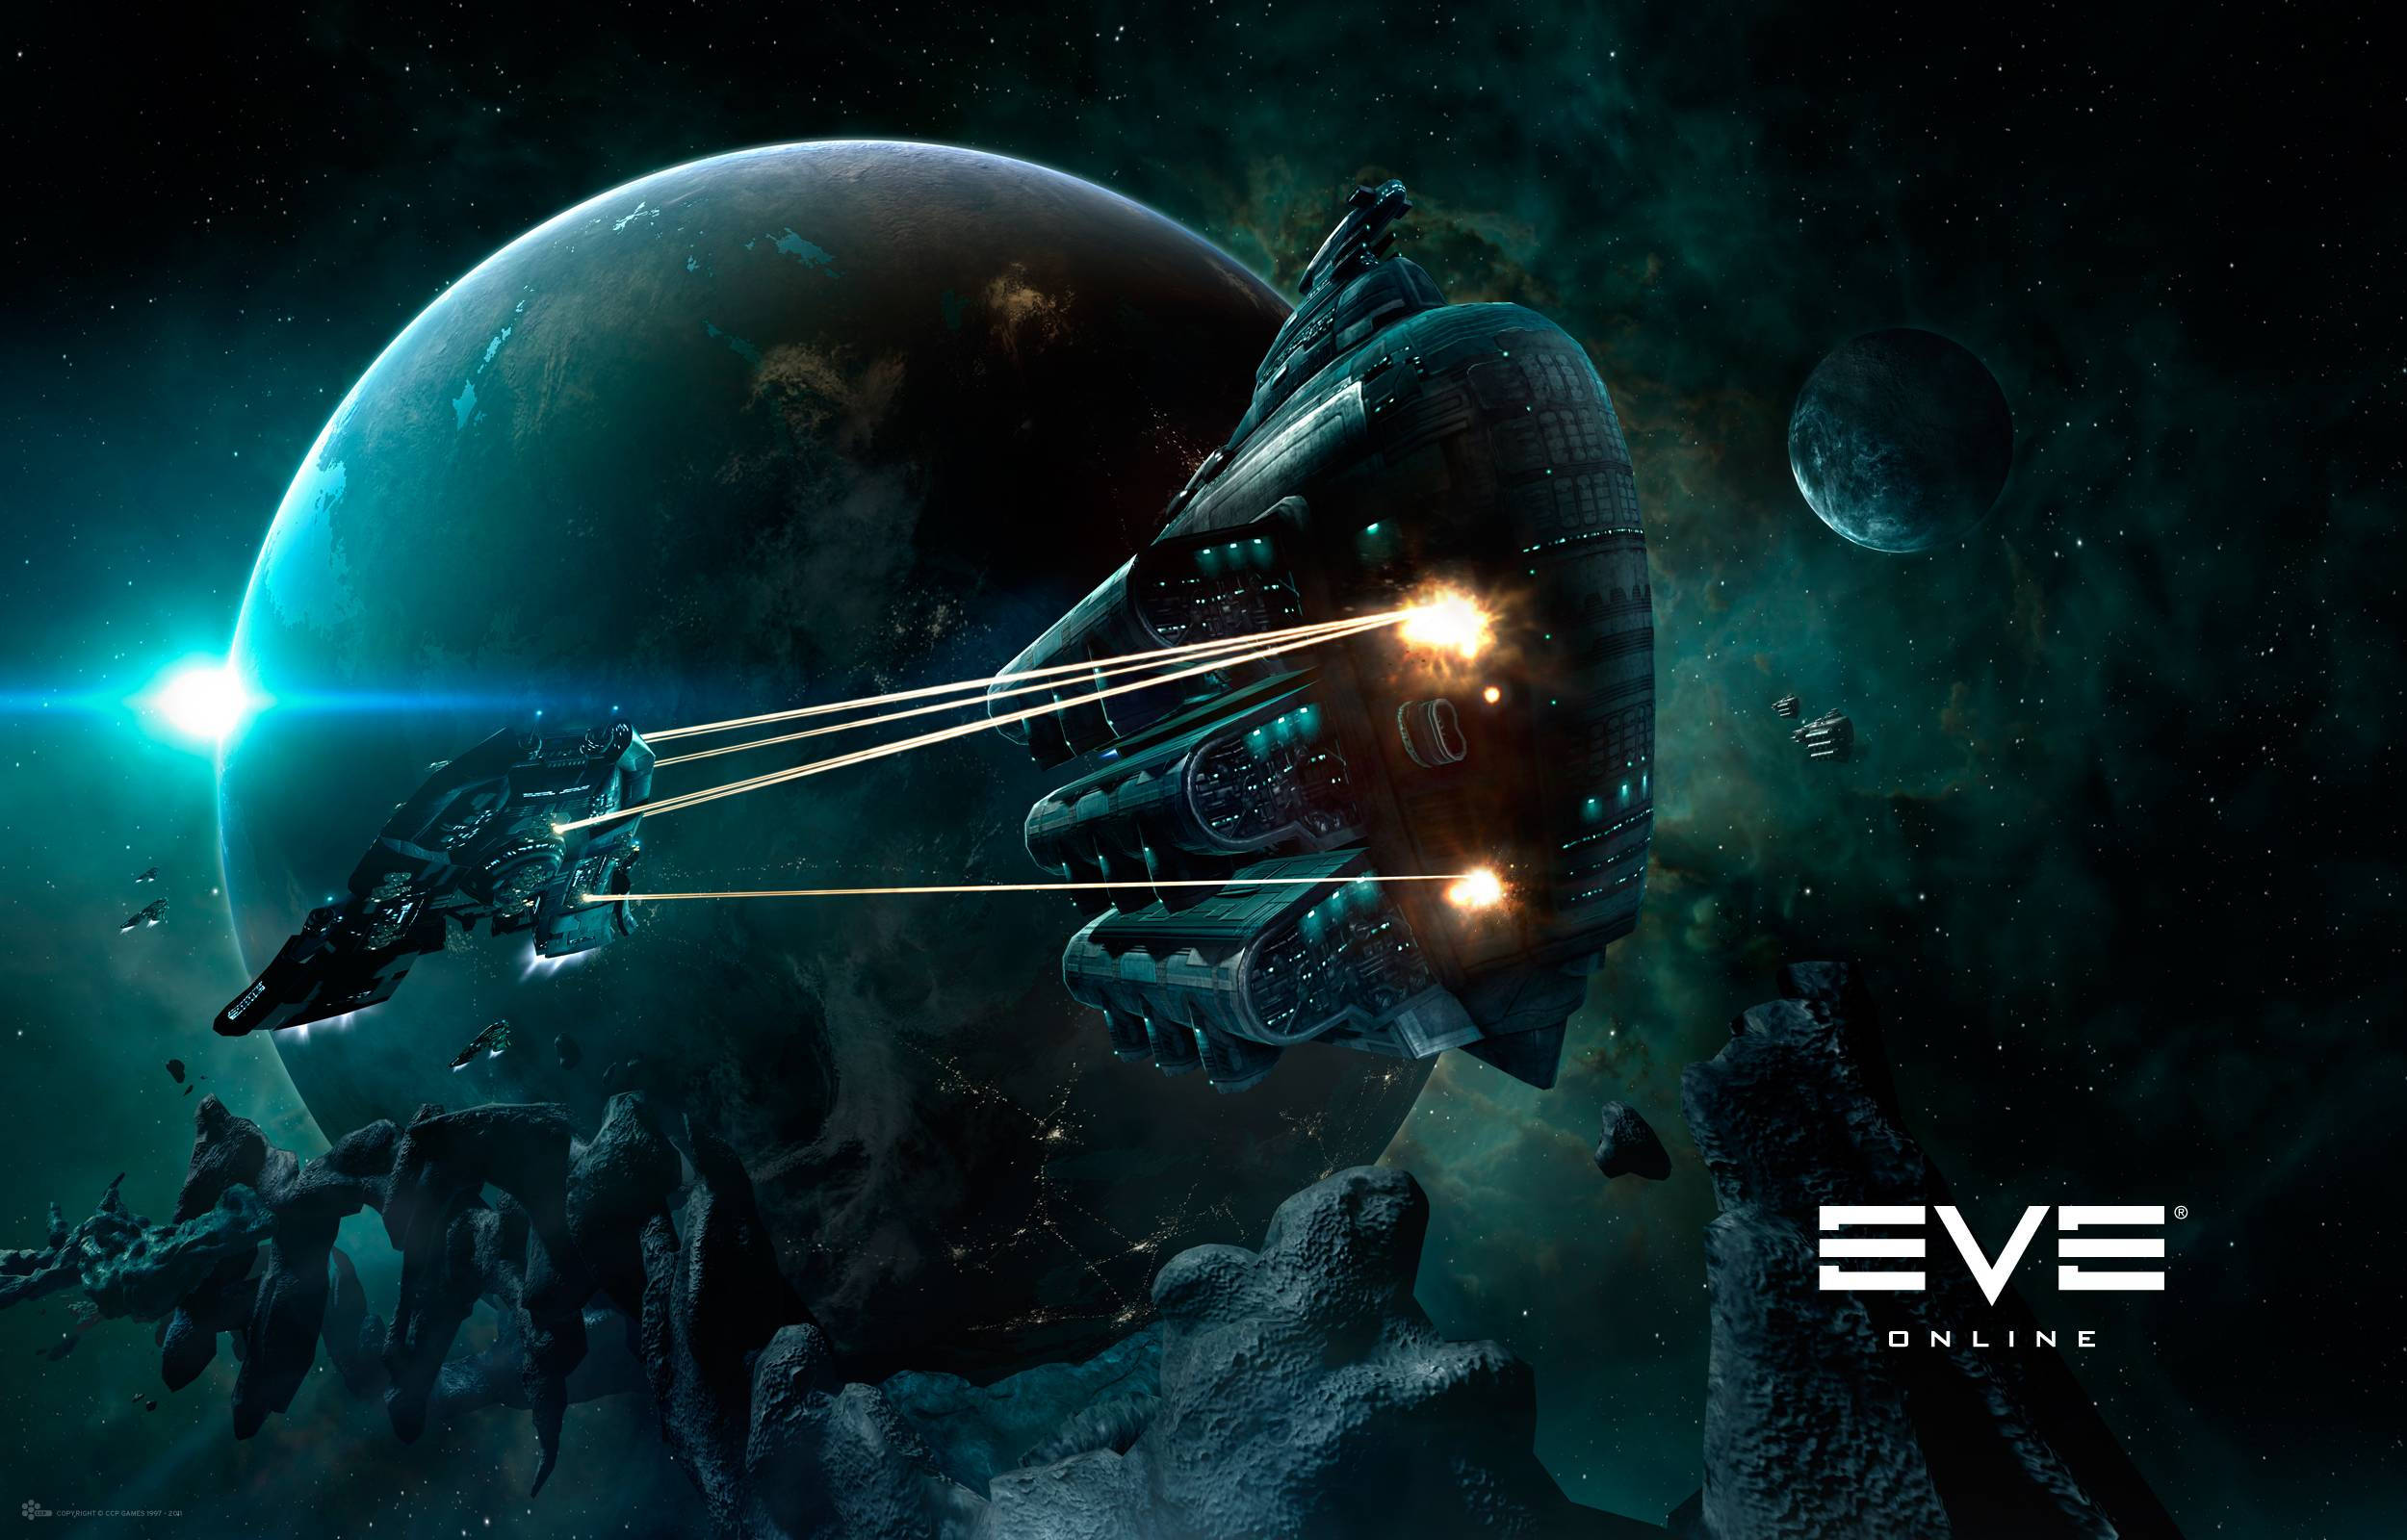 Eve Online Spacecraft Under Attack Picture